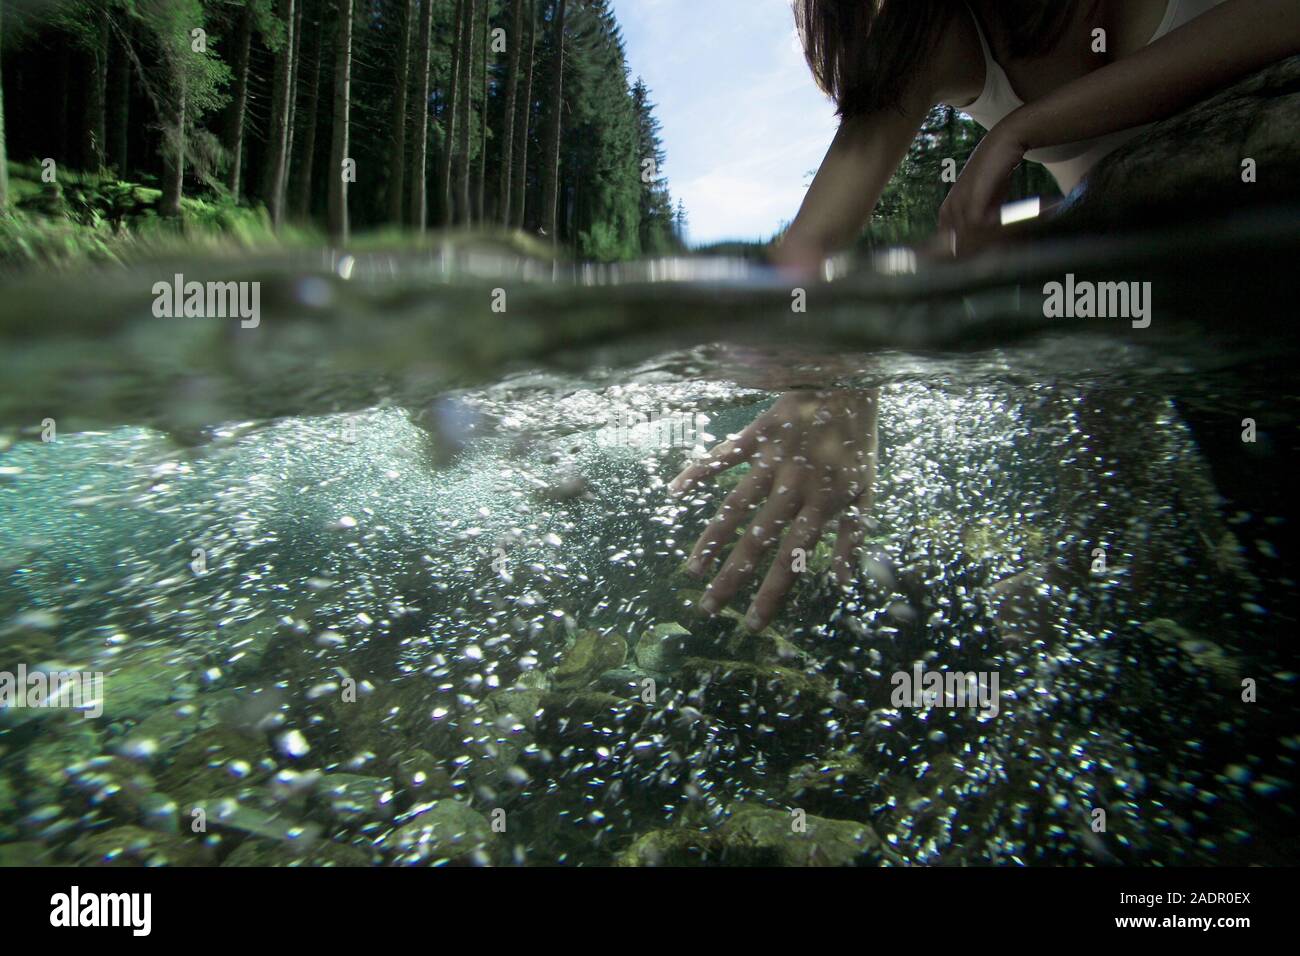 Mädchen im Wasser, Kneippkur - Mädchen im Fluss, Kneipp Therapie Stockfoto